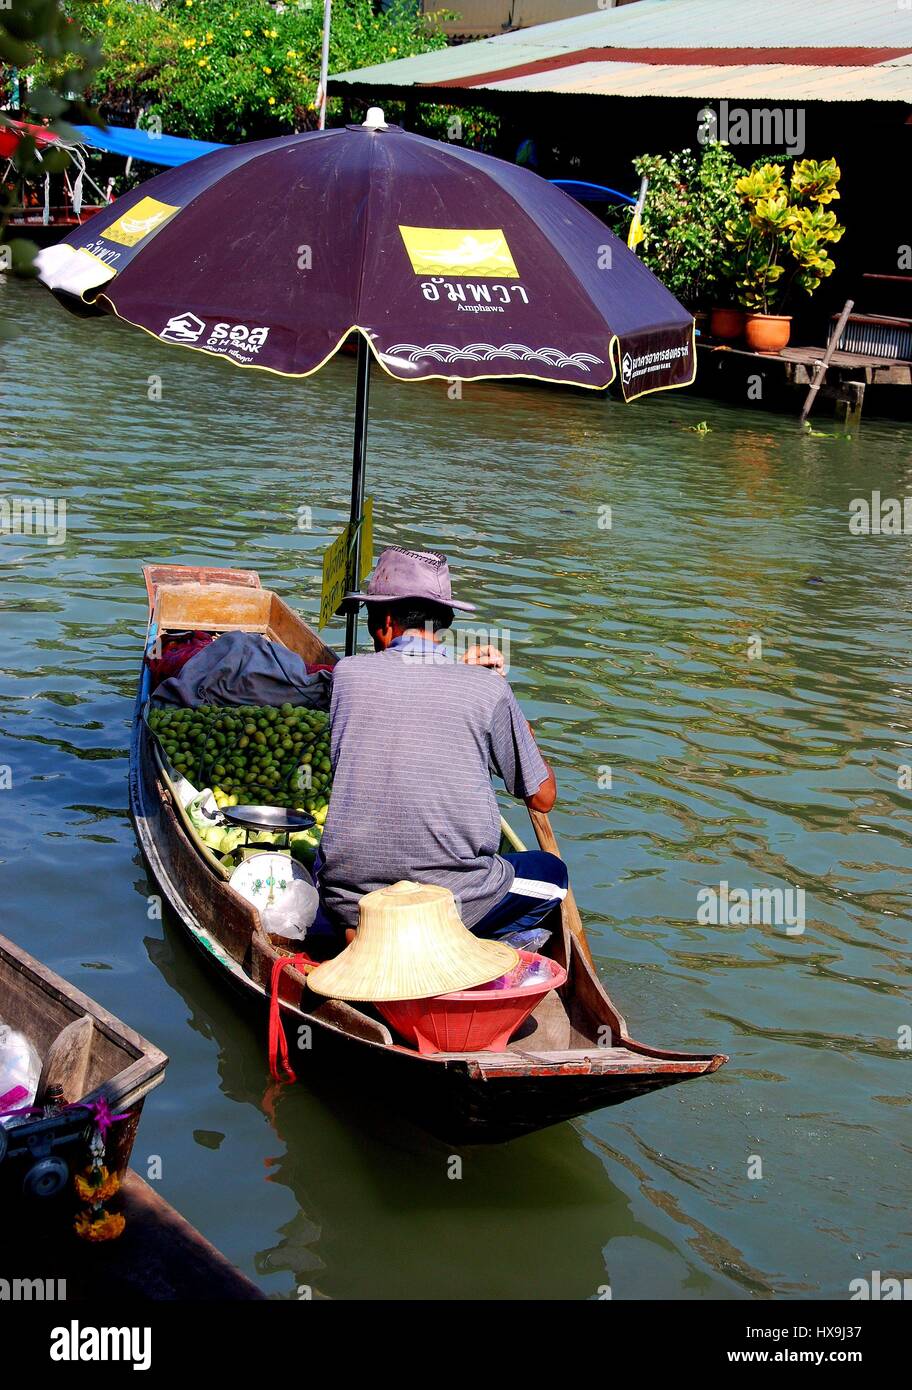 Amphawa, Thaïlande - 17 décembre 2010 : vendeur oriente son petit bateau en bois remplis de fruits le long de la rivière Mae Klong au flottant Amphawa Marke Banque D'Images